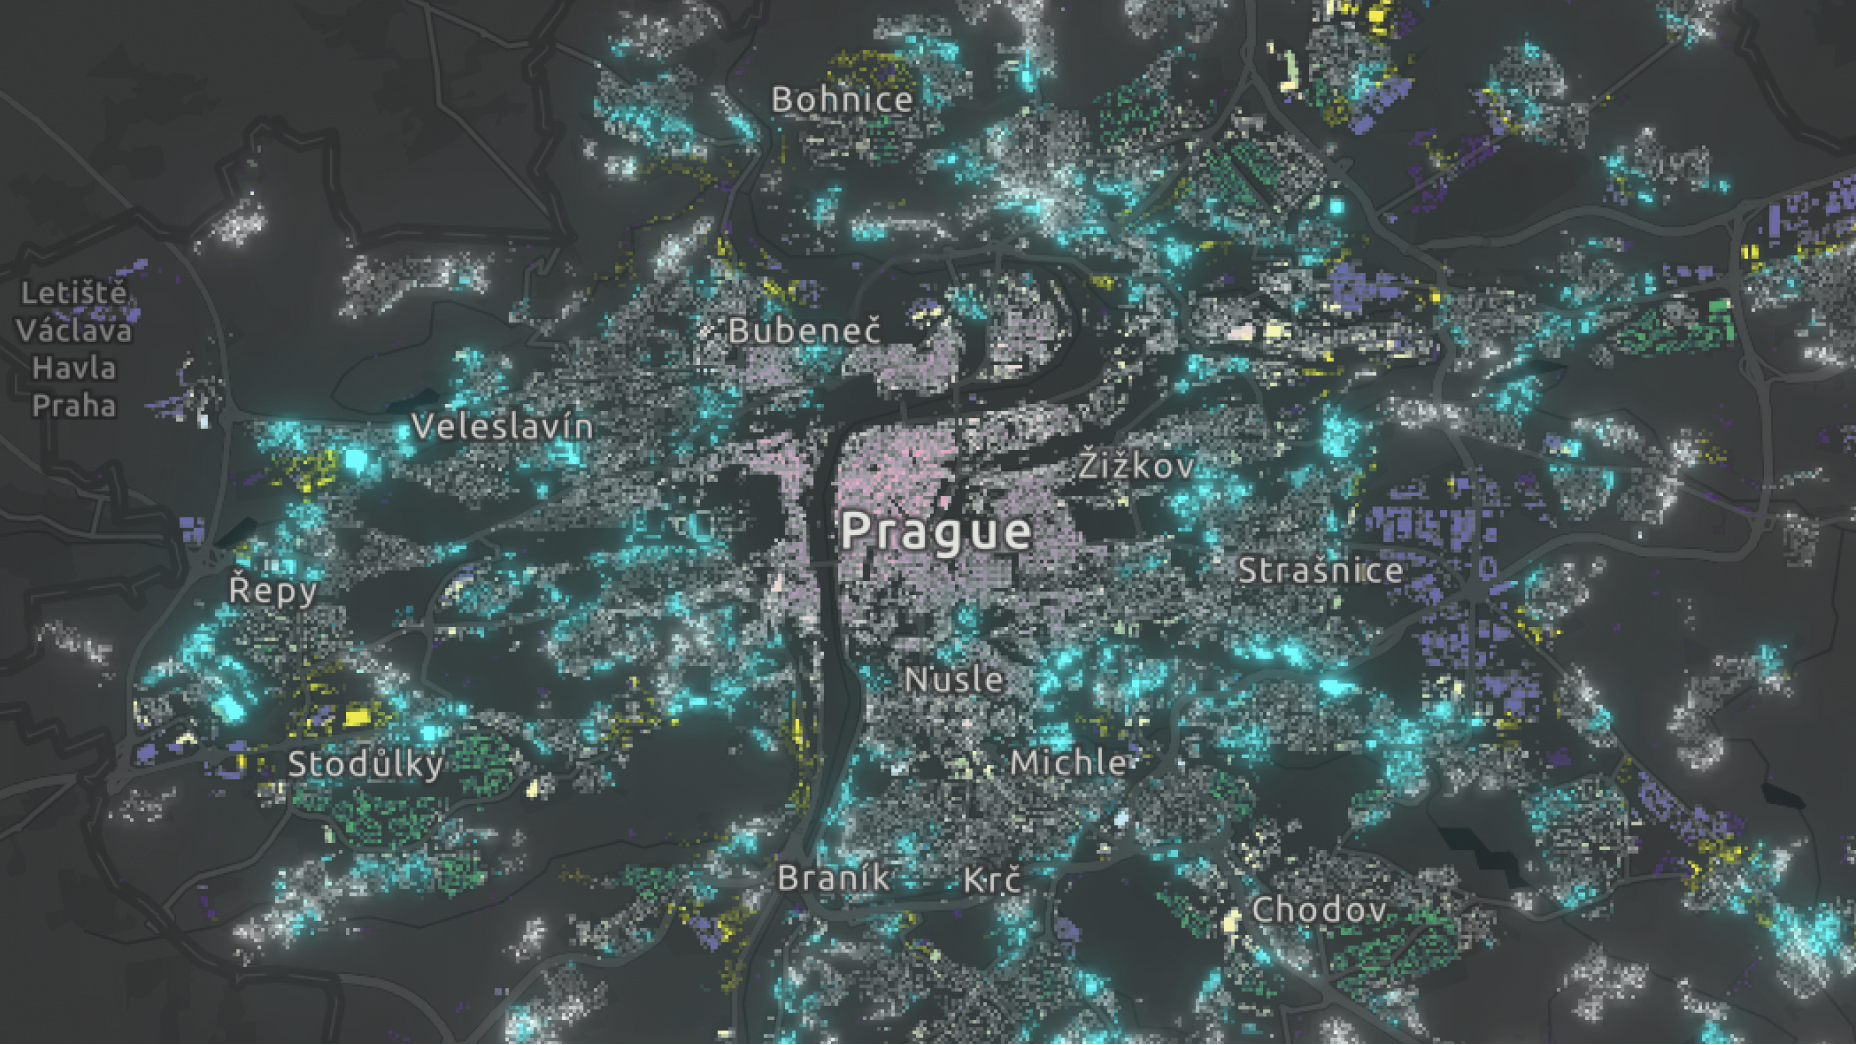 都市の多様性を示すネオン ドットが描かれた、暗いテーマのプラハのマップ